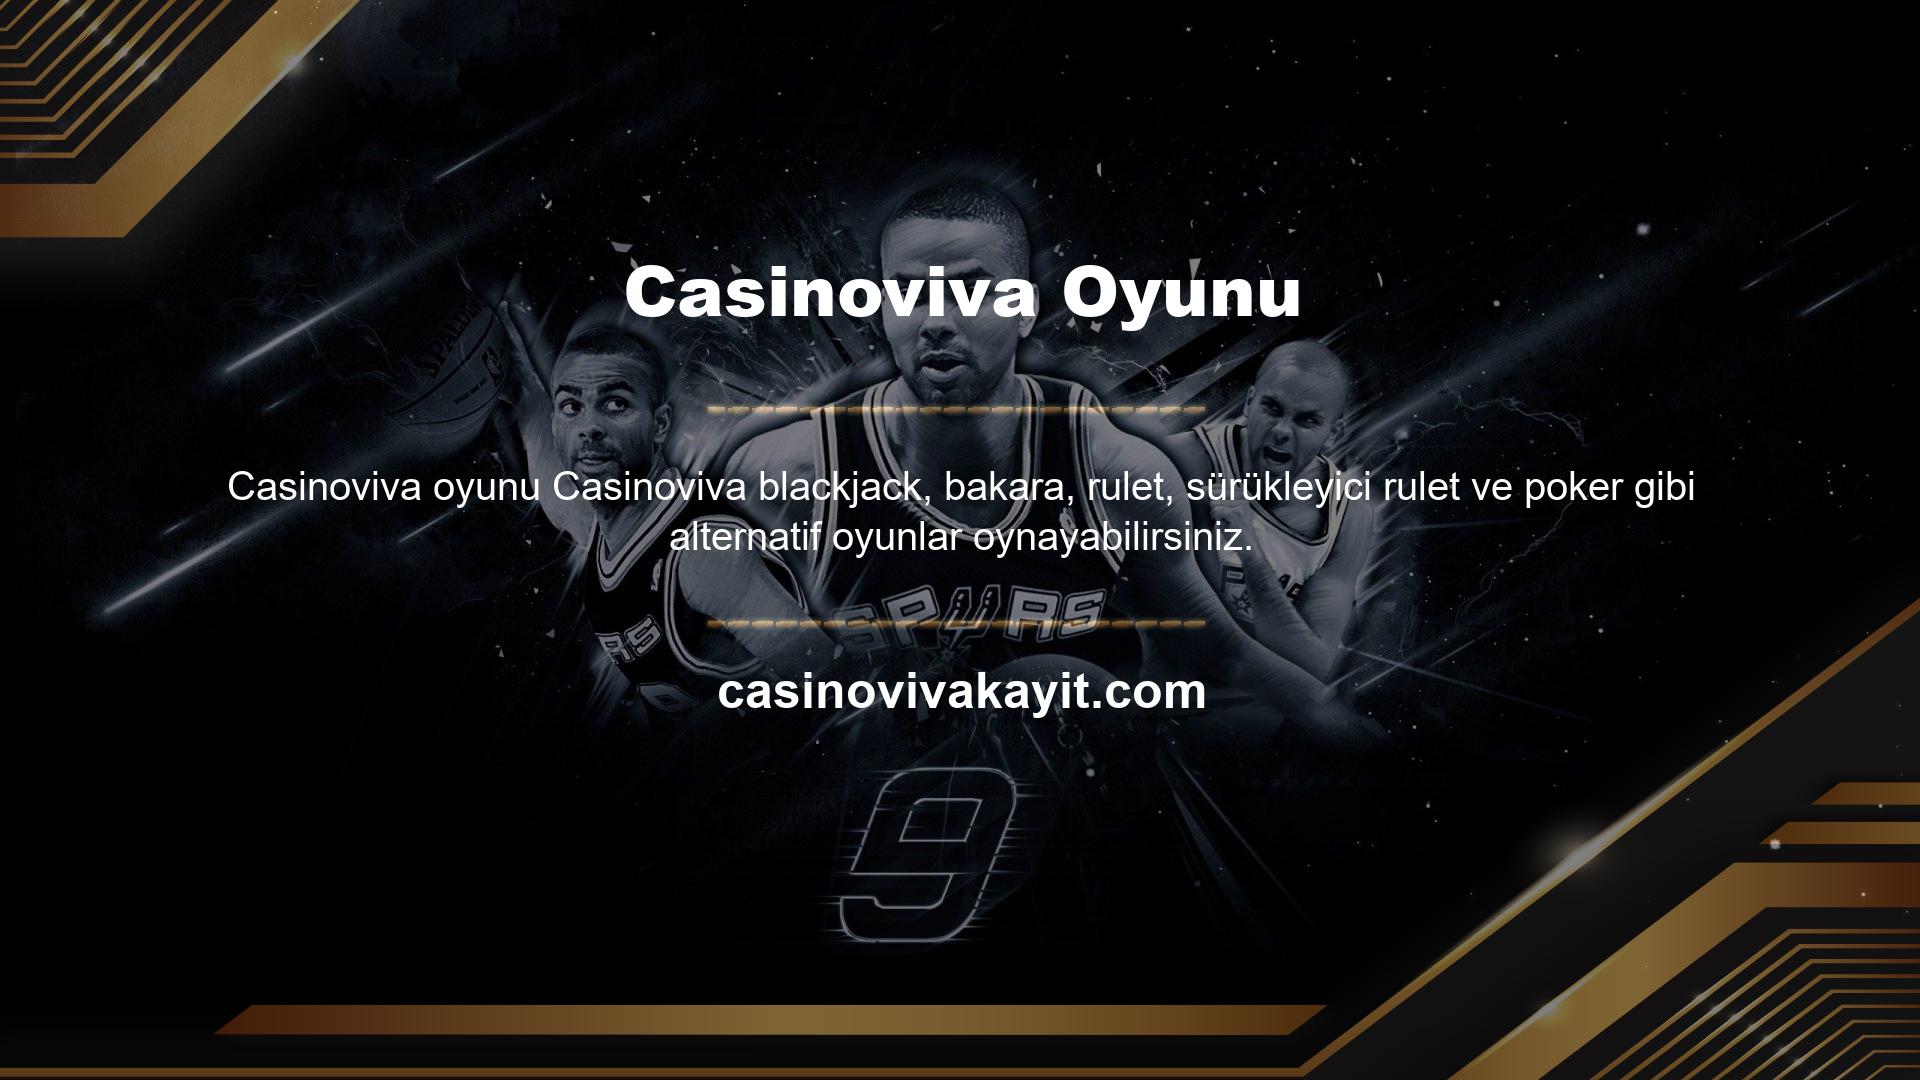 Casinoviva, spor ve casino kategorilerinde online bahis için kullanılan adreslerden farklı bir domain üzerinden yayın yapmaktadır